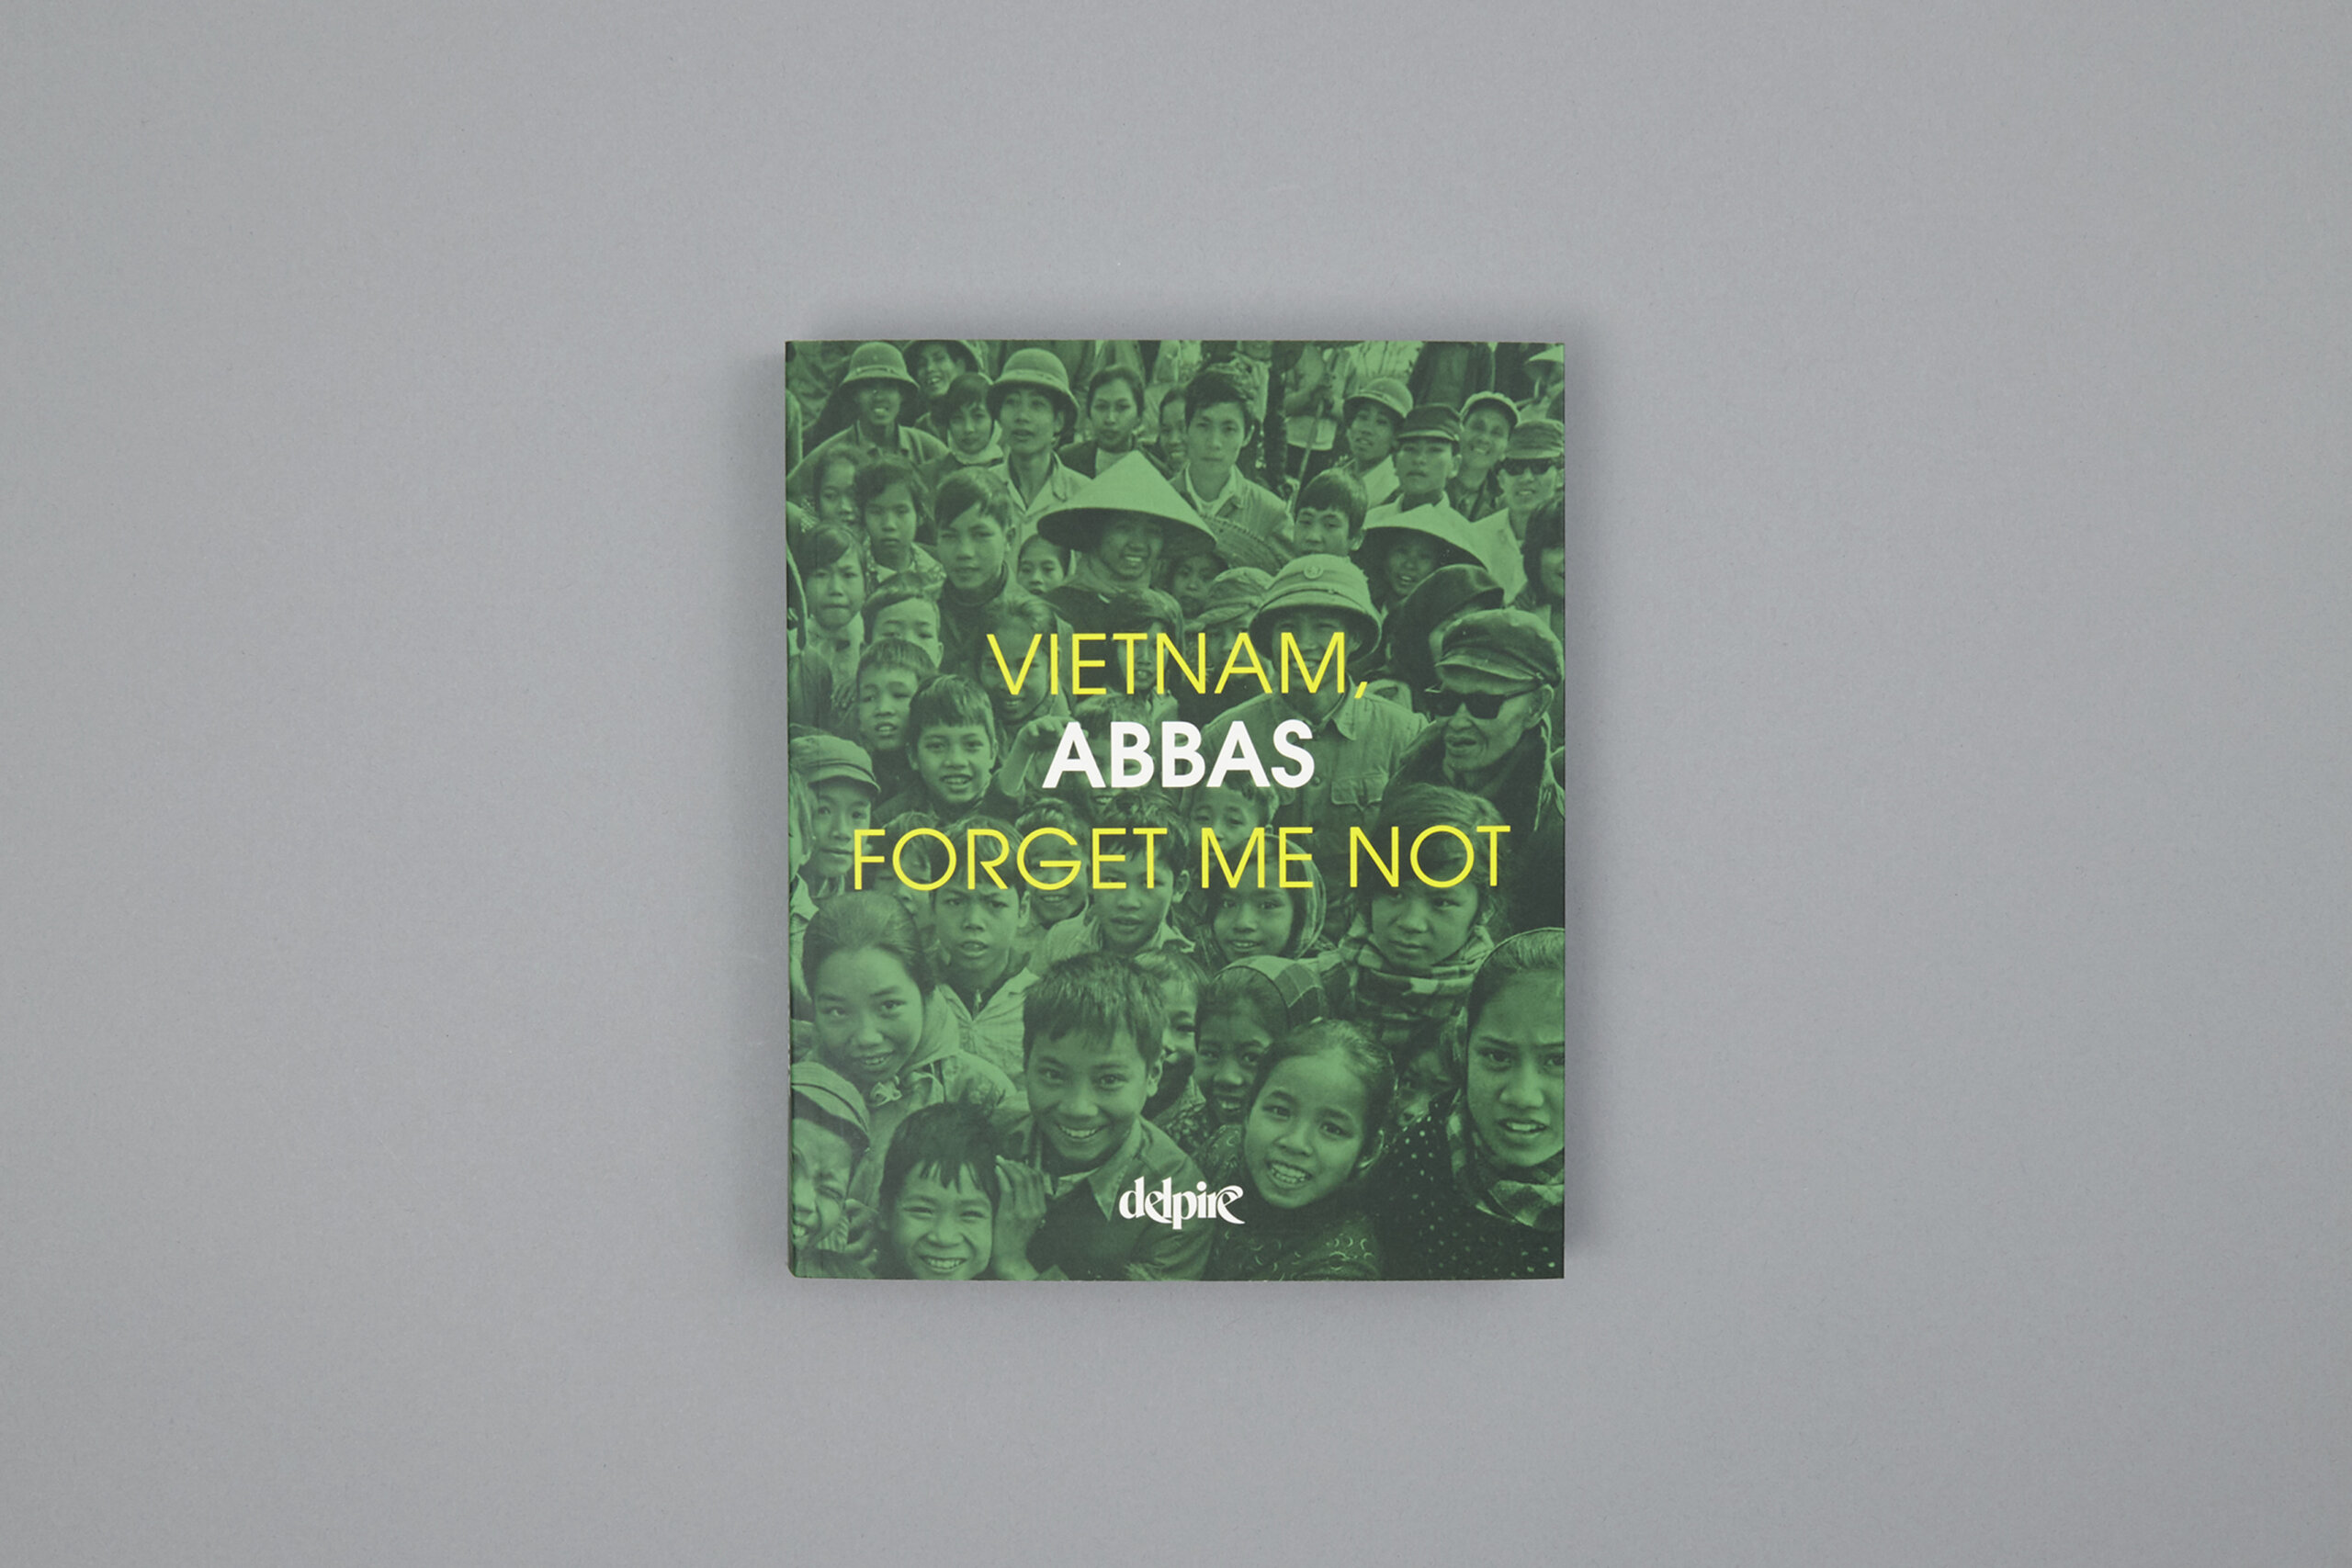 delpire-ABBAS-vietnam-forget-me-not